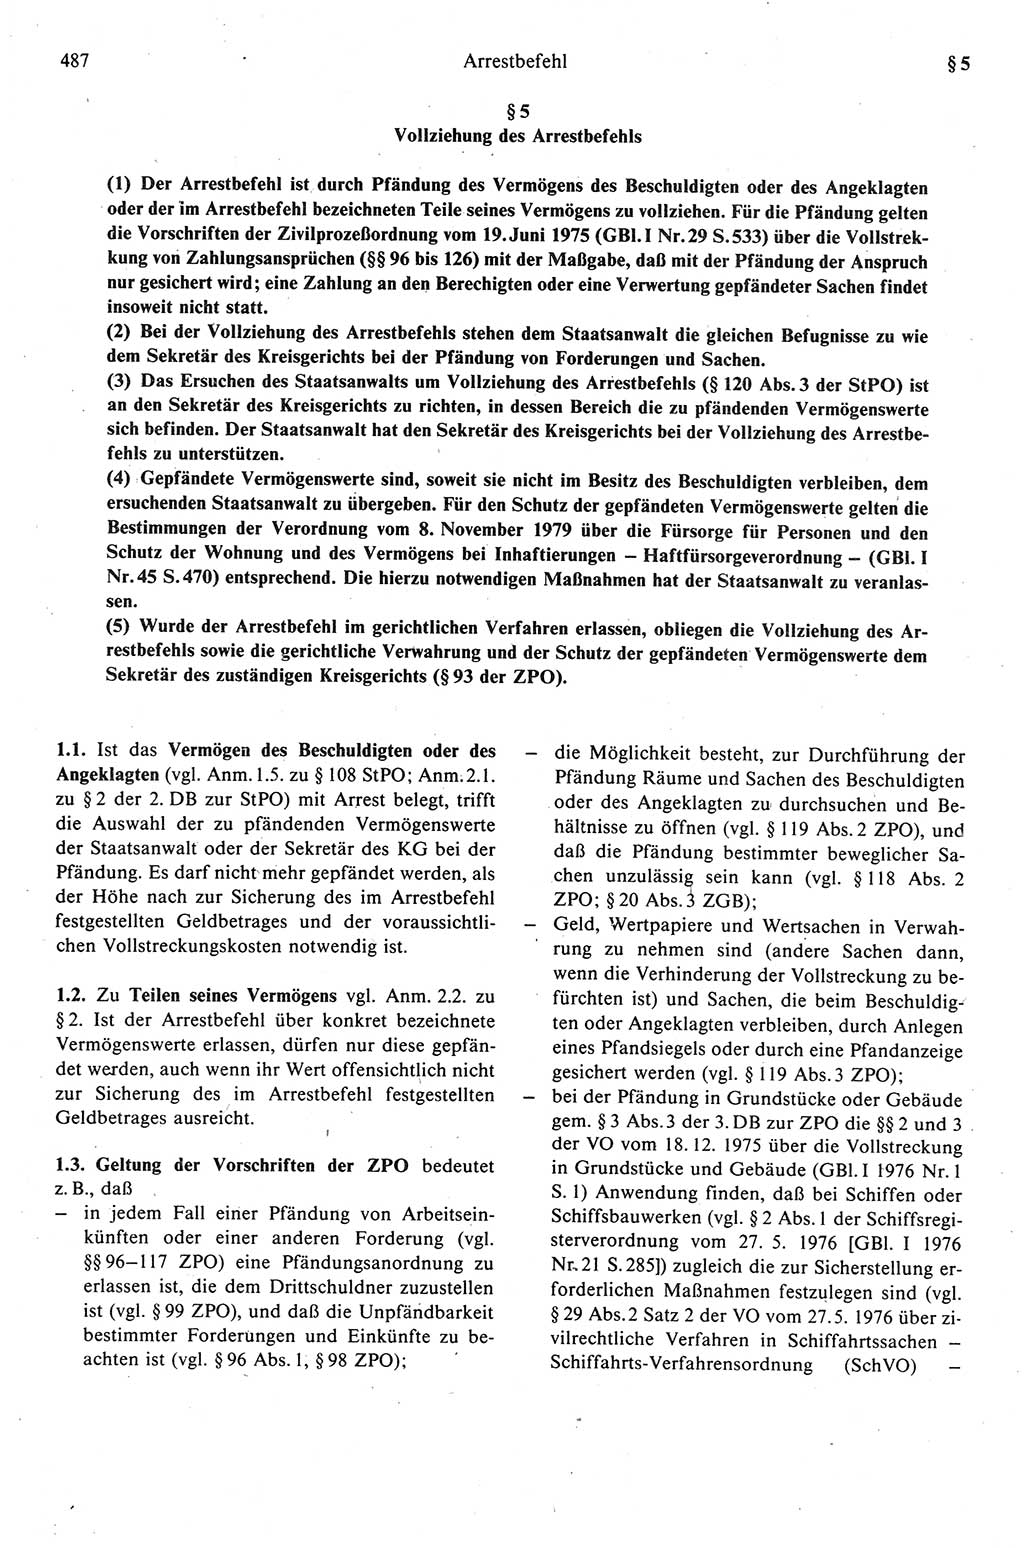 Strafprozeßrecht der DDR (Deutsche Demokratische Republik), Kommentar zur Strafprozeßordnung (StPO) 1989, Seite 487 (Strafprozeßr. DDR Komm. StPO 1989, S. 487)